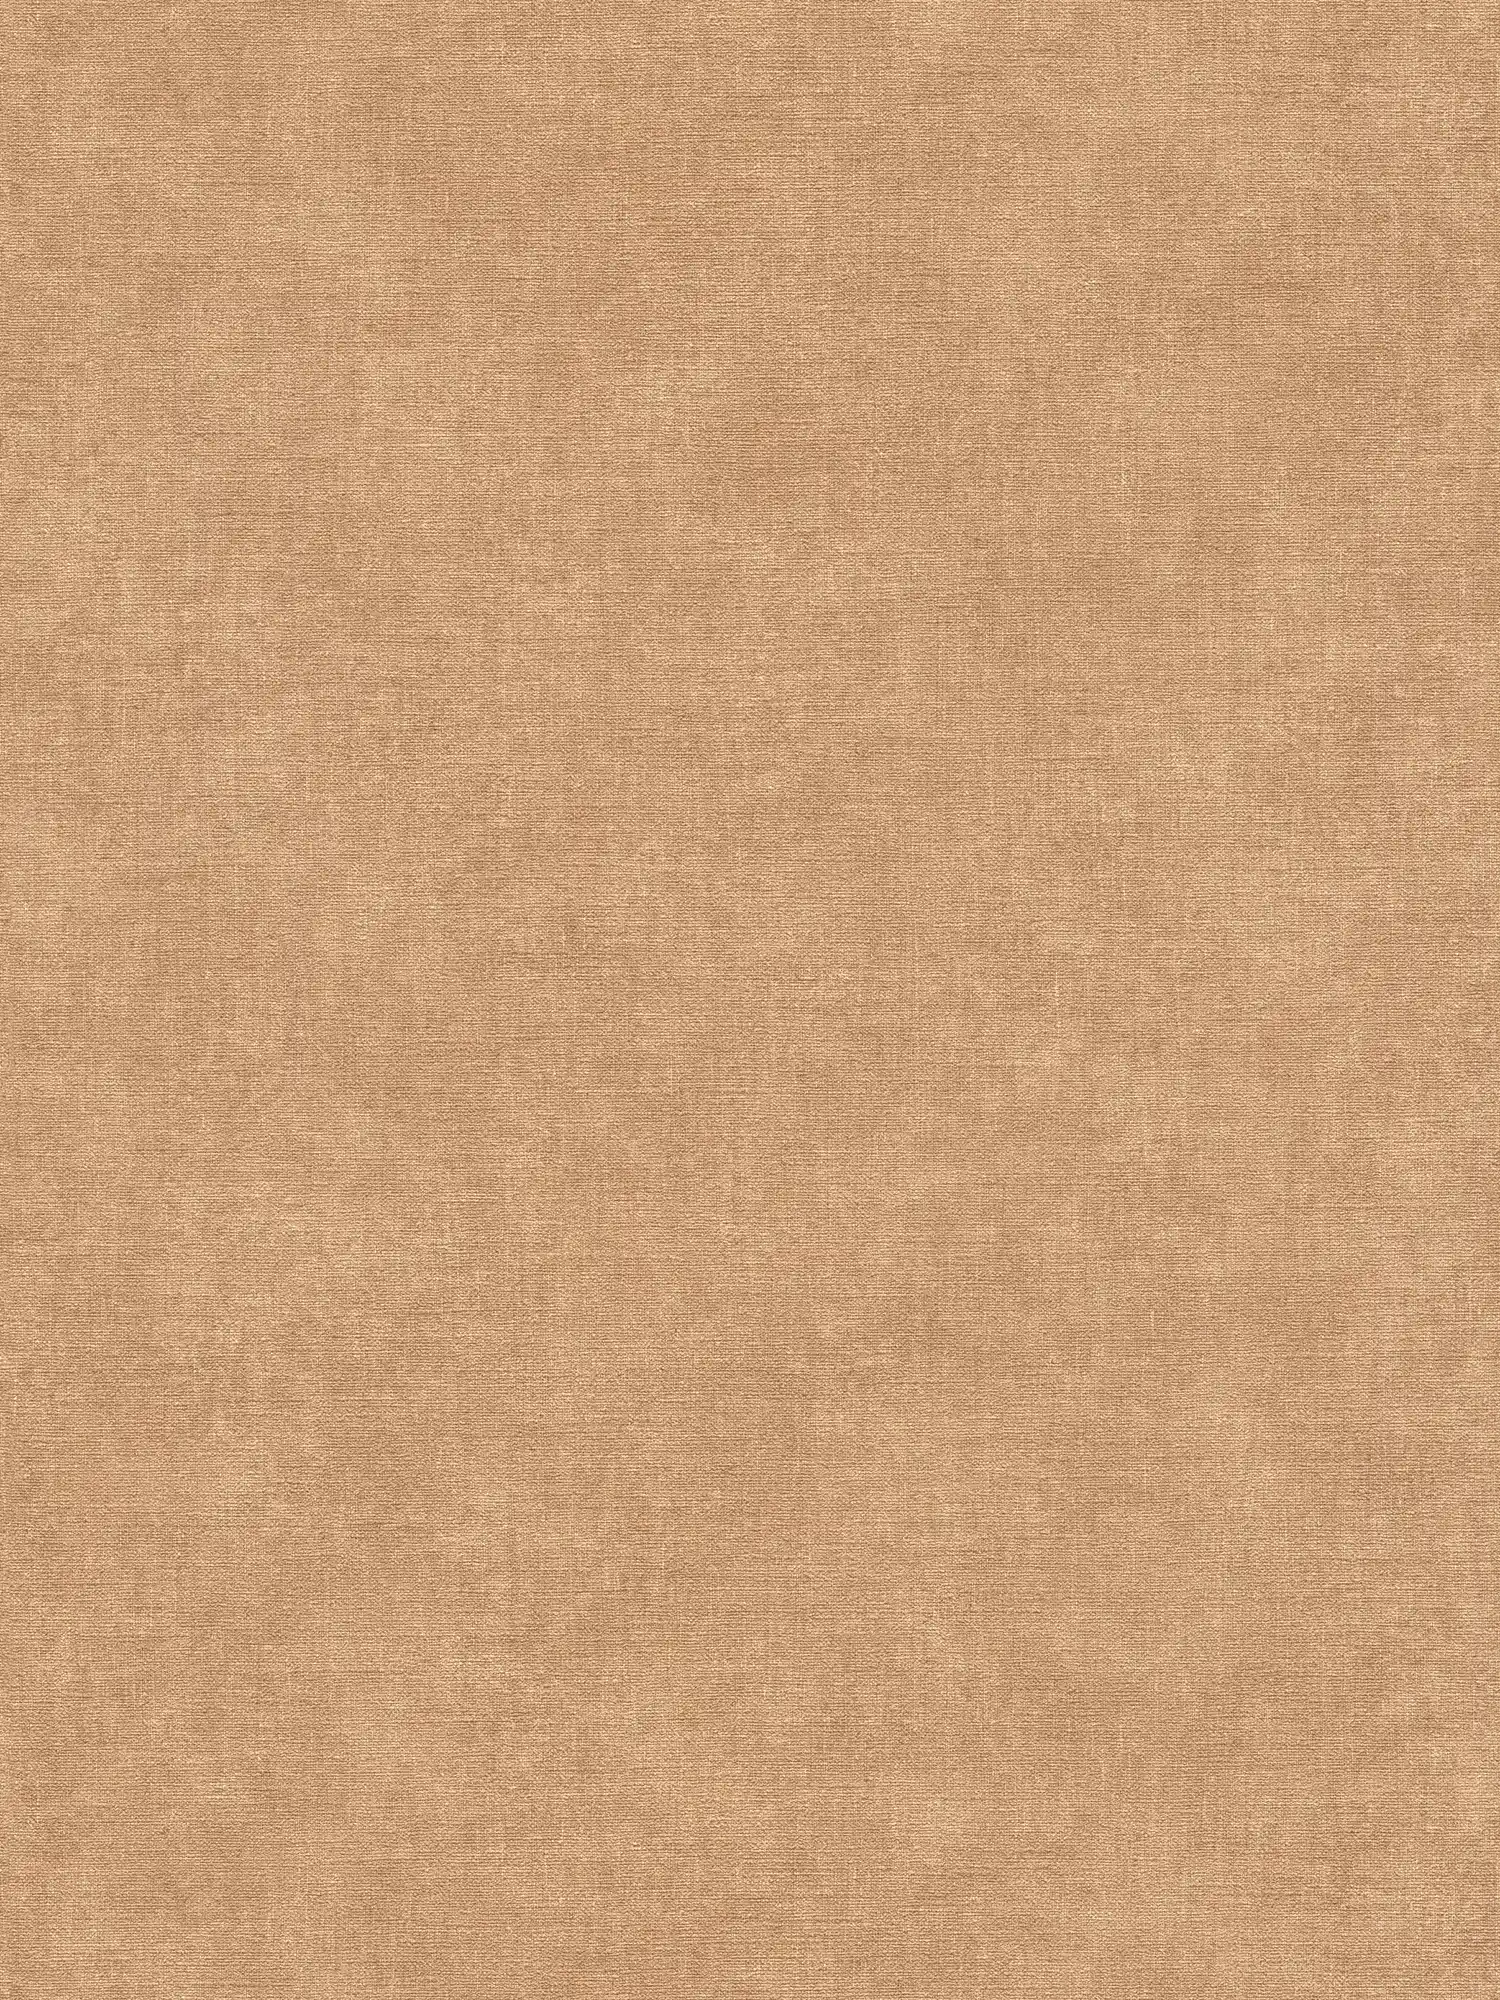 Papel pintado unitario con textura ligera en aspecto textil - marrón, beige
